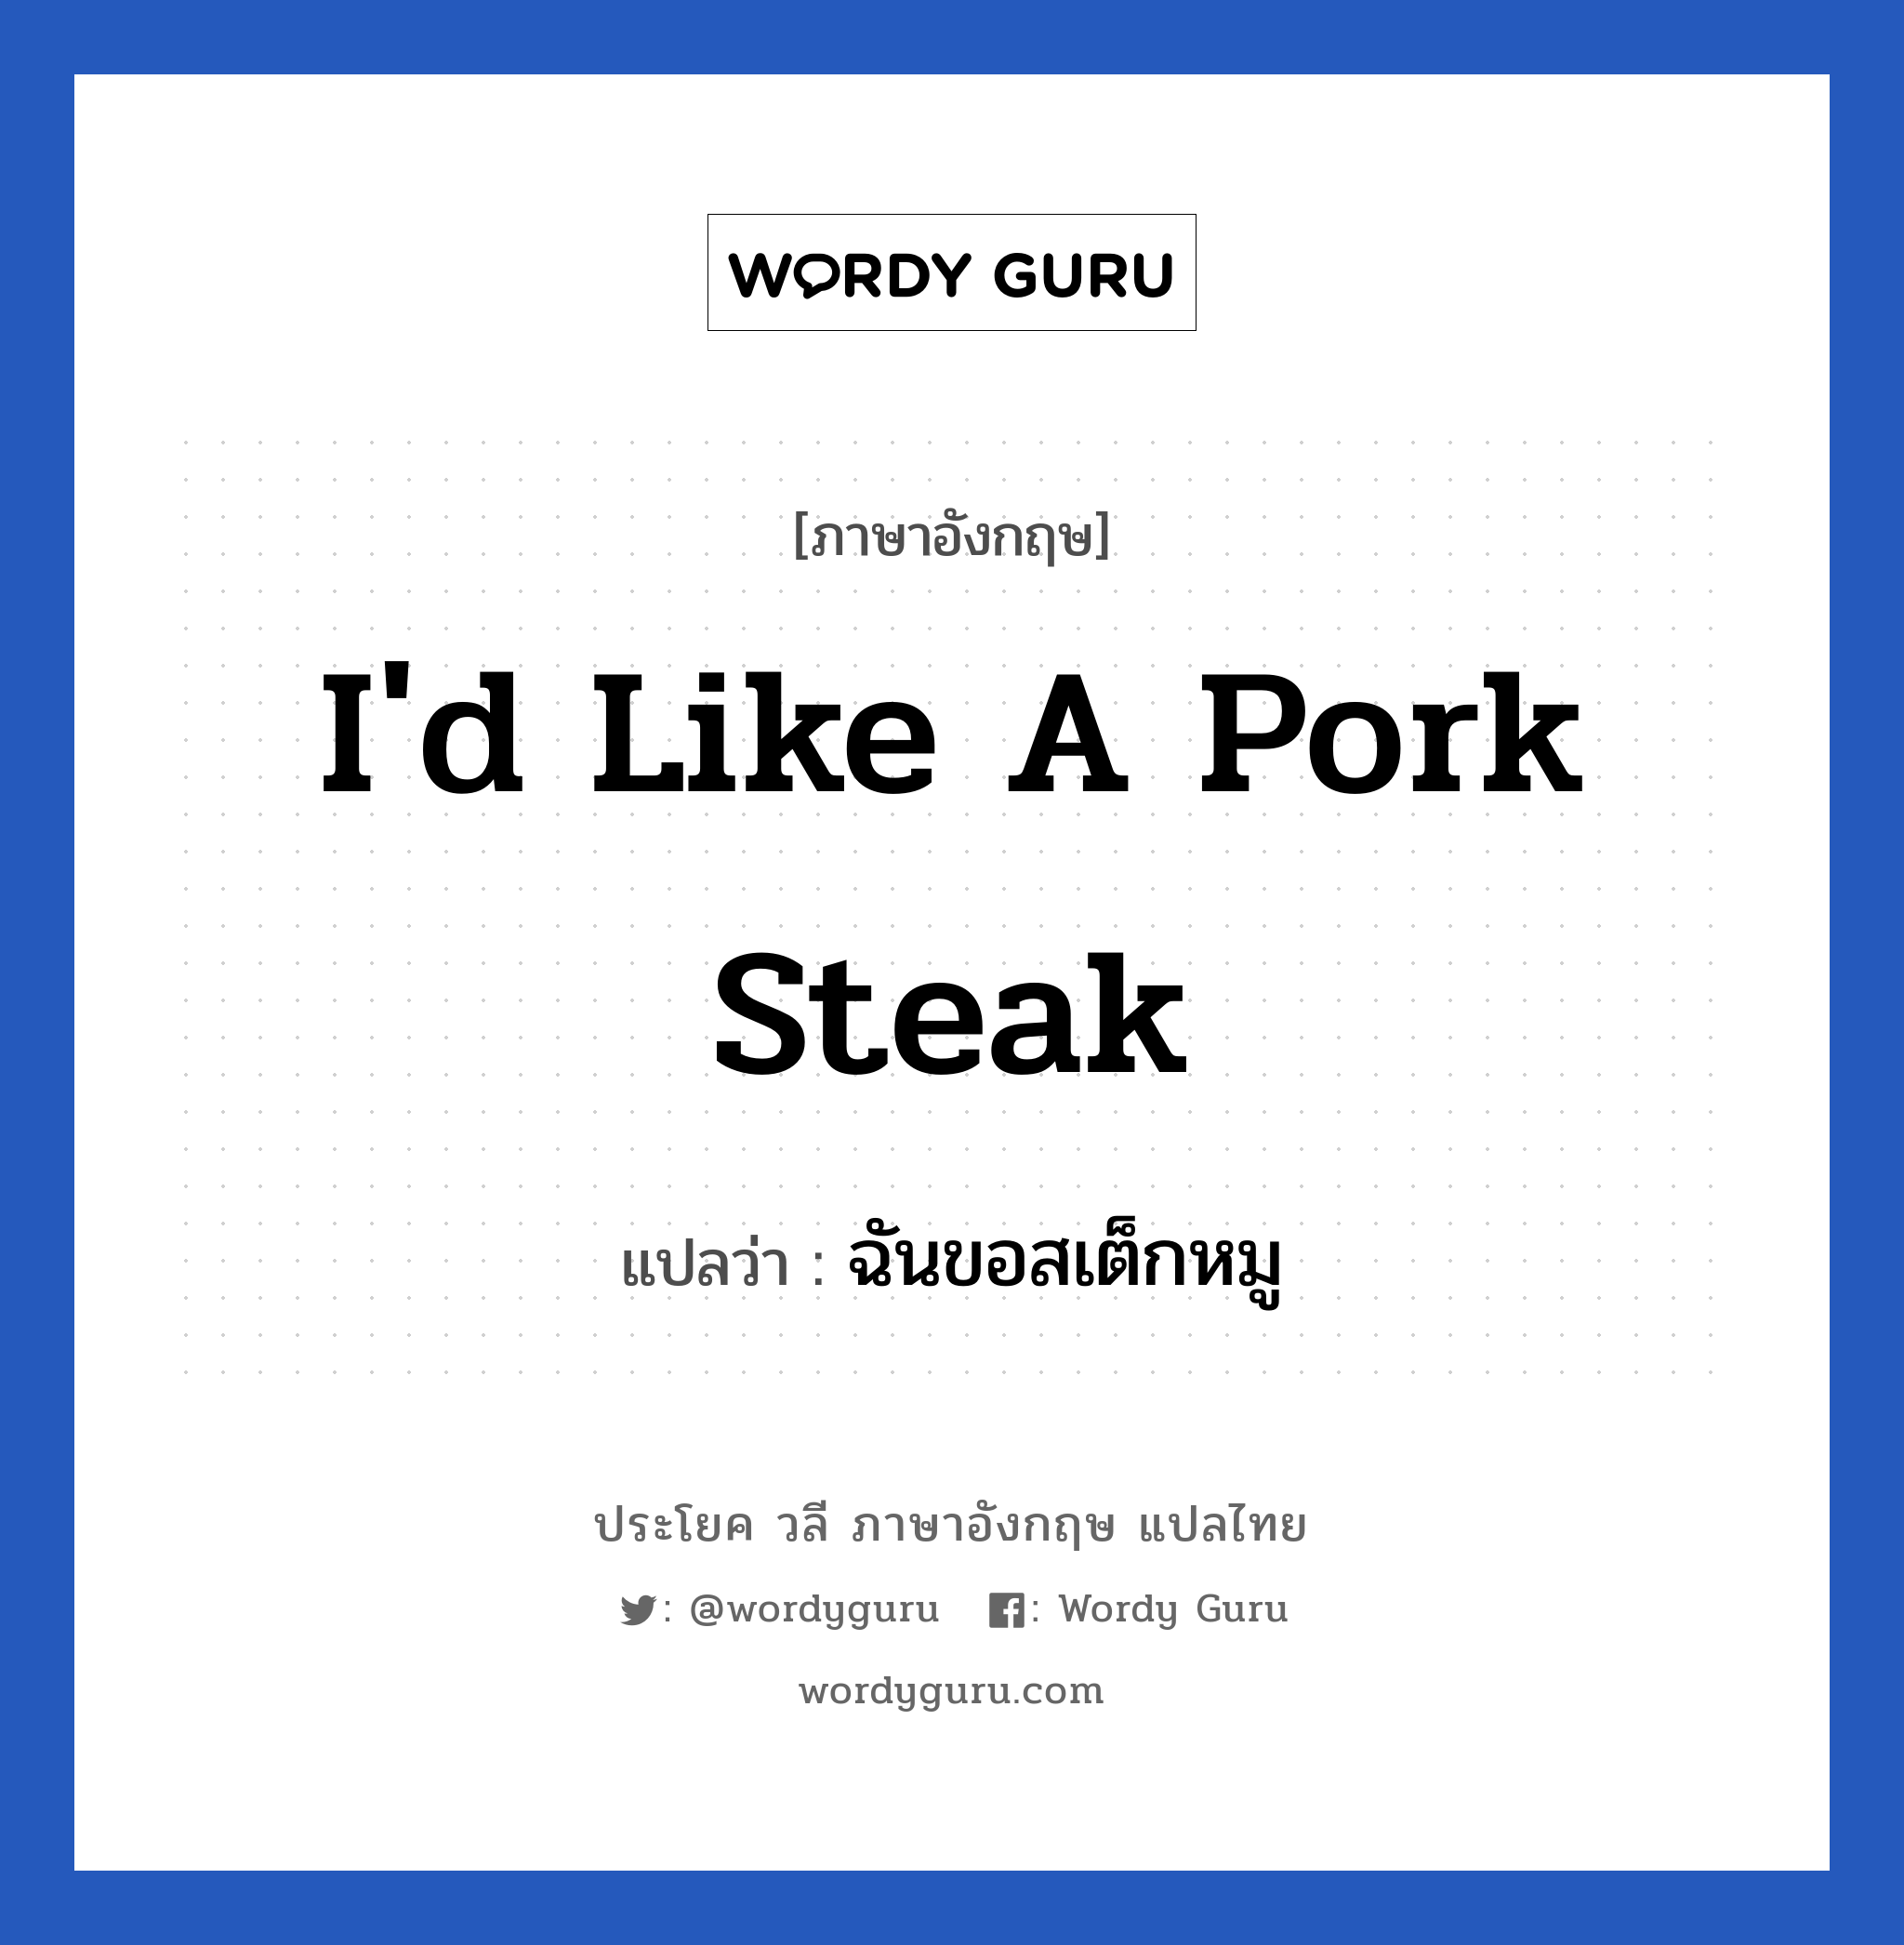 ฉันขอสเต็กหมู ภาษาอังกฤษ?, วลีภาษาอังกฤษ ฉันขอสเต็กหมู แปลว่า I'd like a pork steak